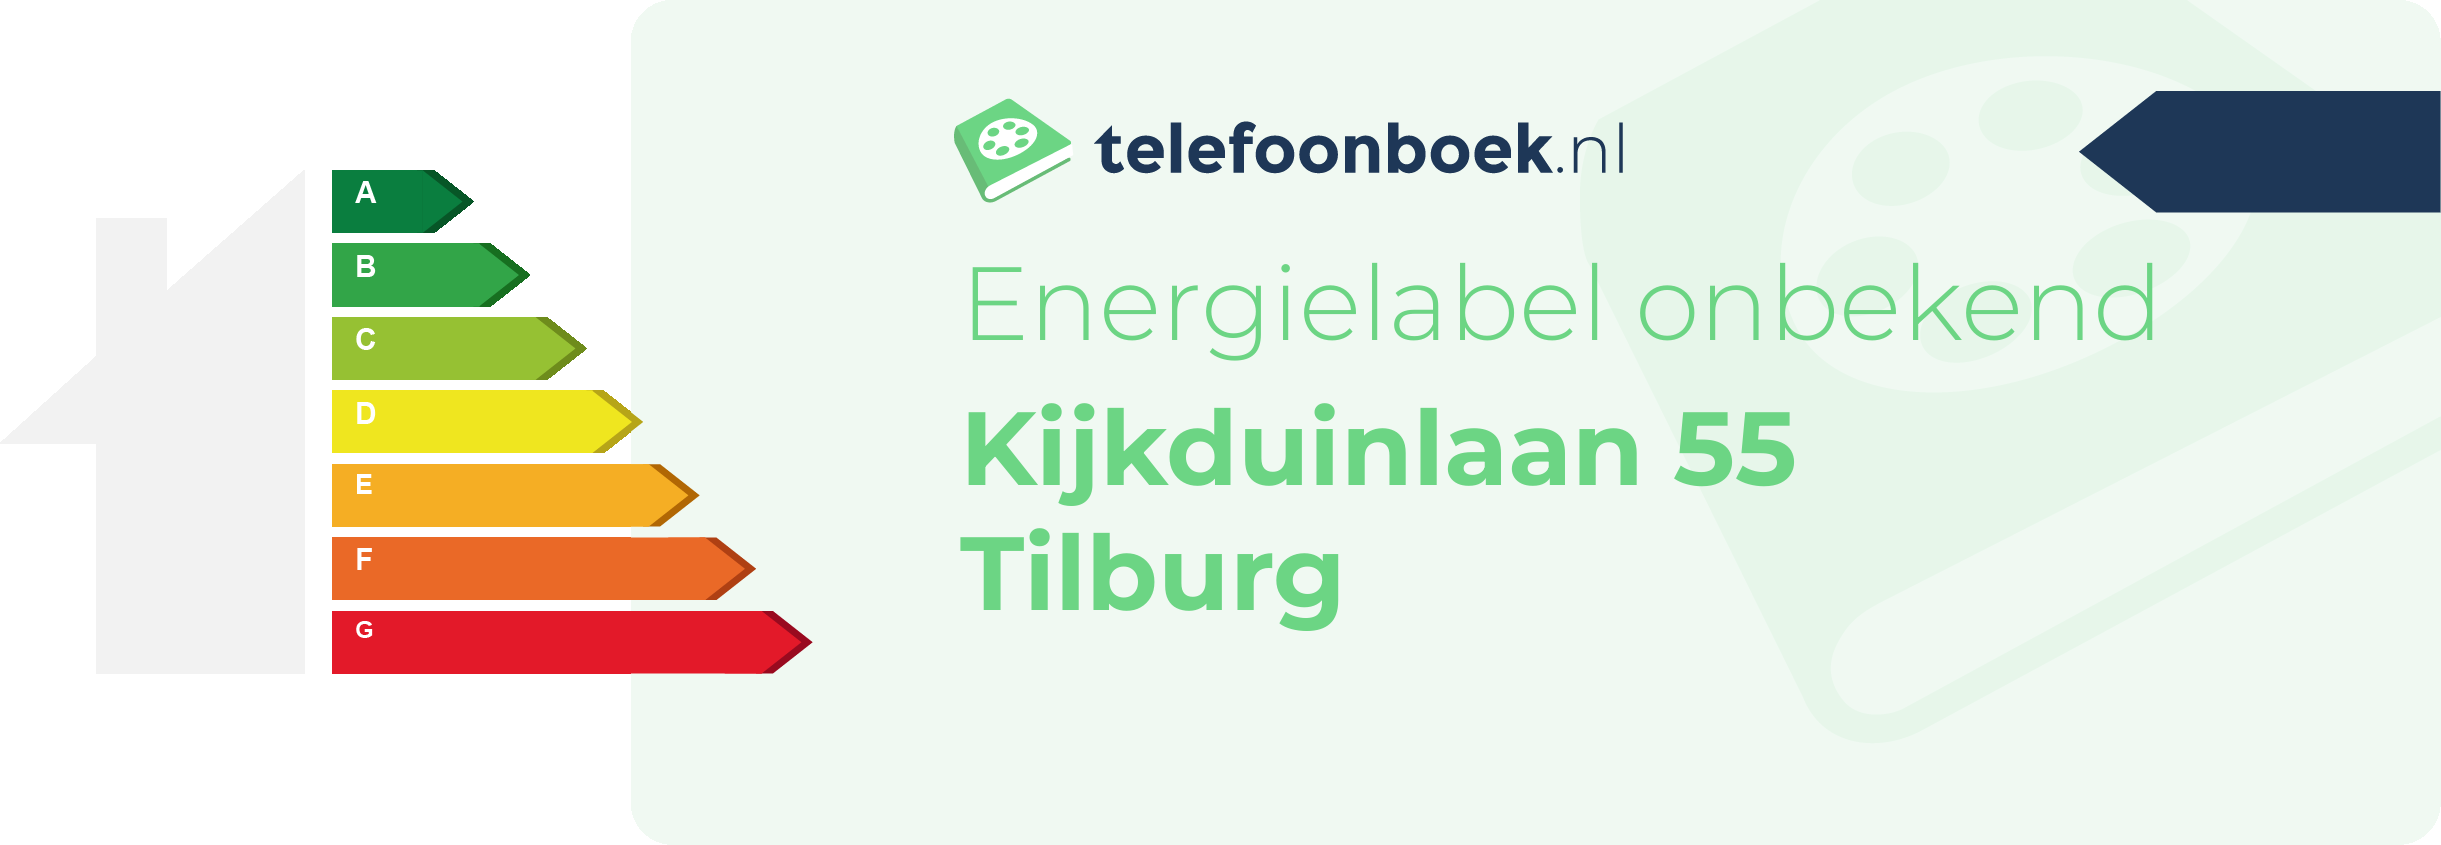 Energielabel Kijkduinlaan 55 Tilburg